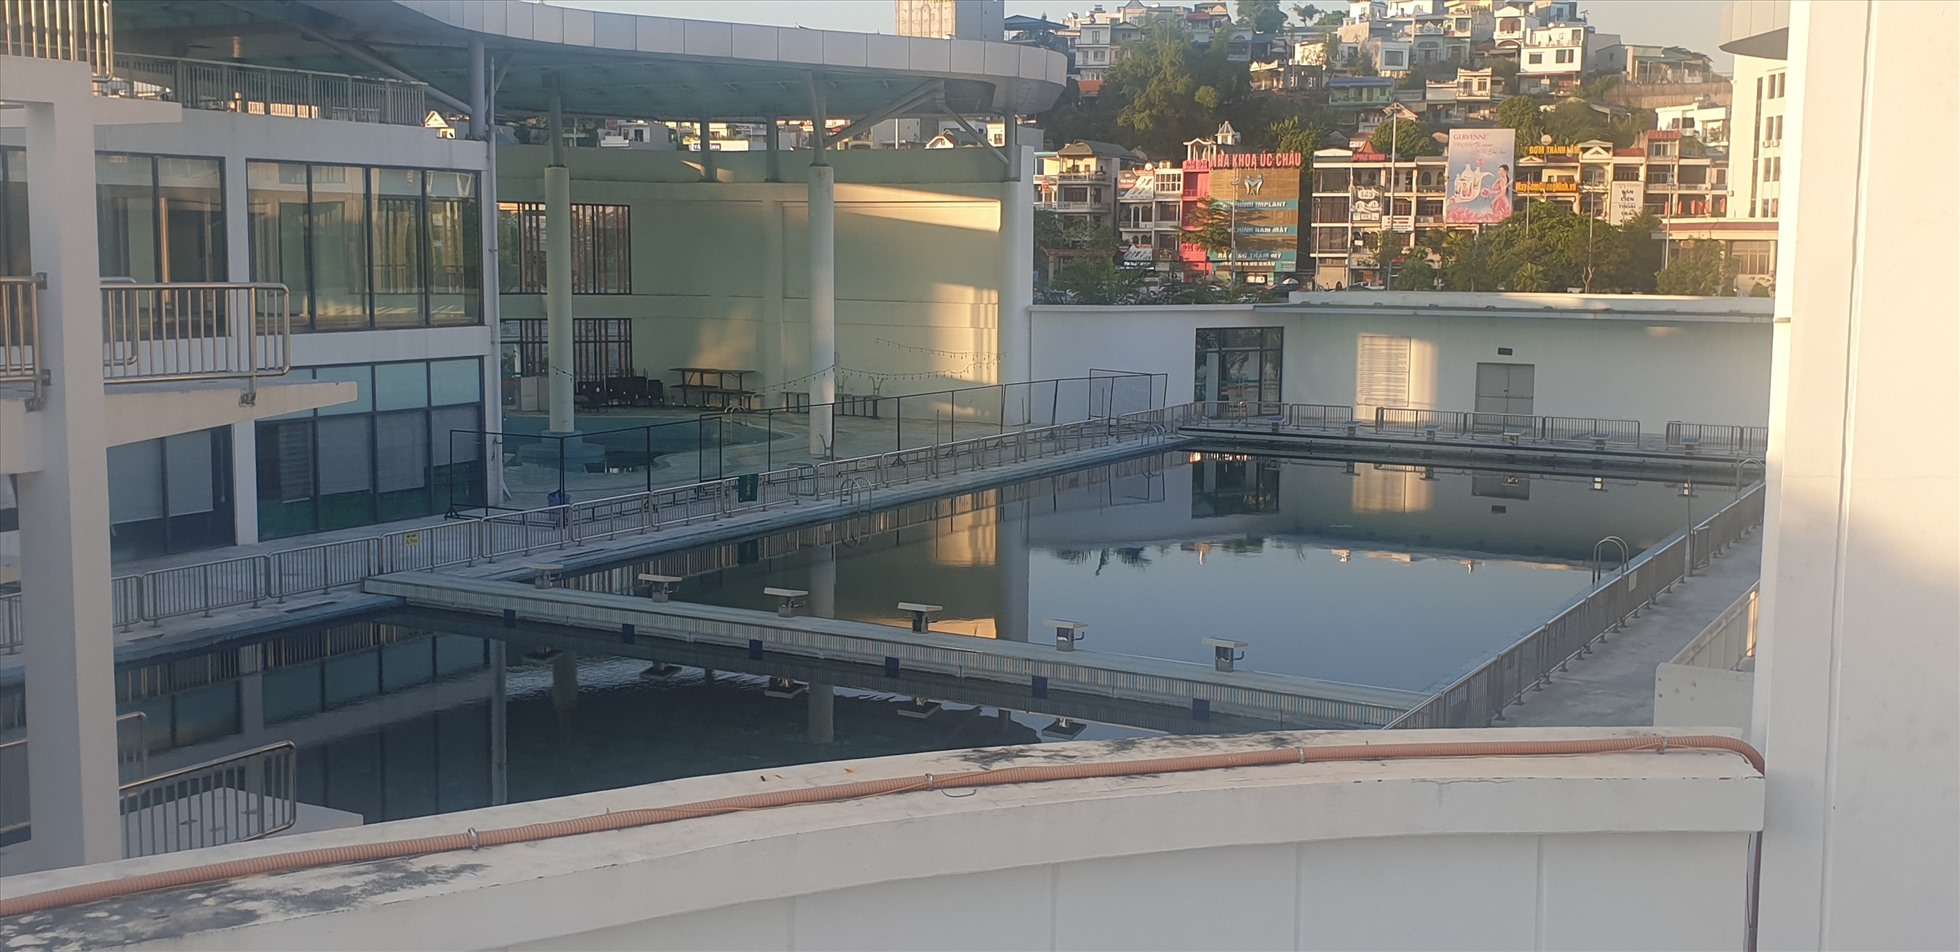 Khu bể bơi hiện đại của Cung Văn hóa Thanh thiếu nhi Quảng Ninh vẫn tiếp tục tạm dừng hoạt động từ năm 2019 đến nay. Ảnh: Nguyễn Hùng